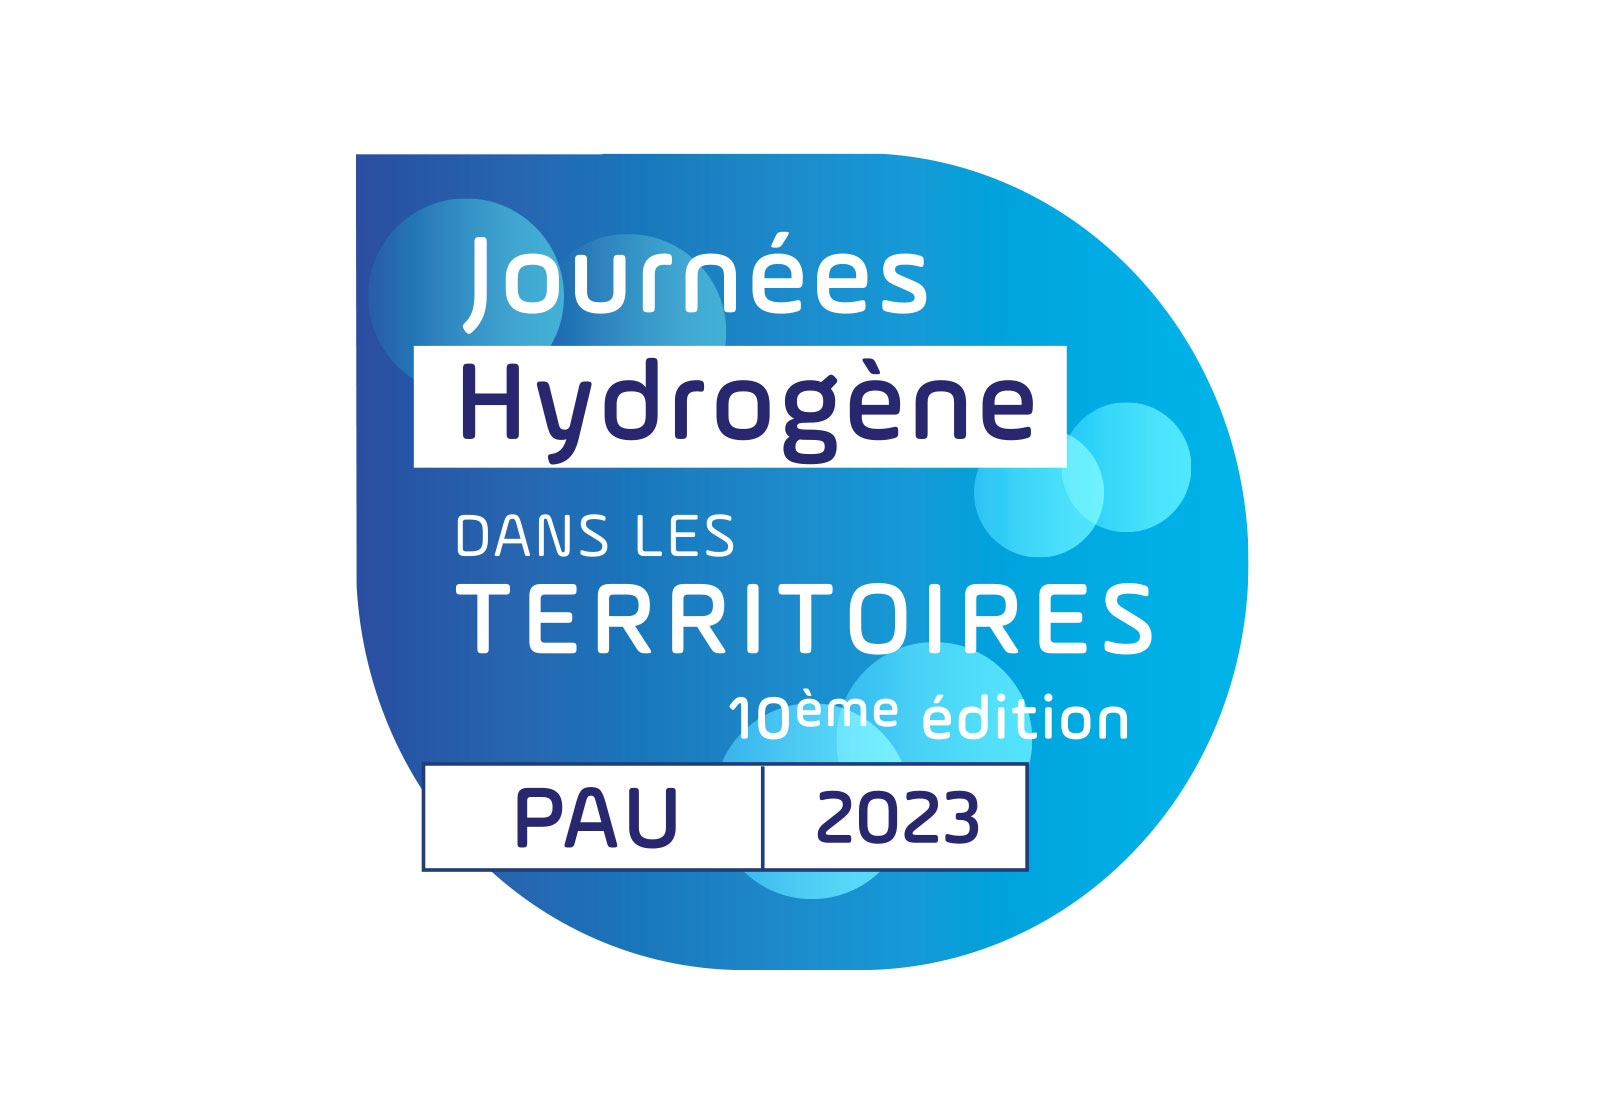 Journées hydrogène dans les territoires 2023 : les inscriptions sont ouvertes 